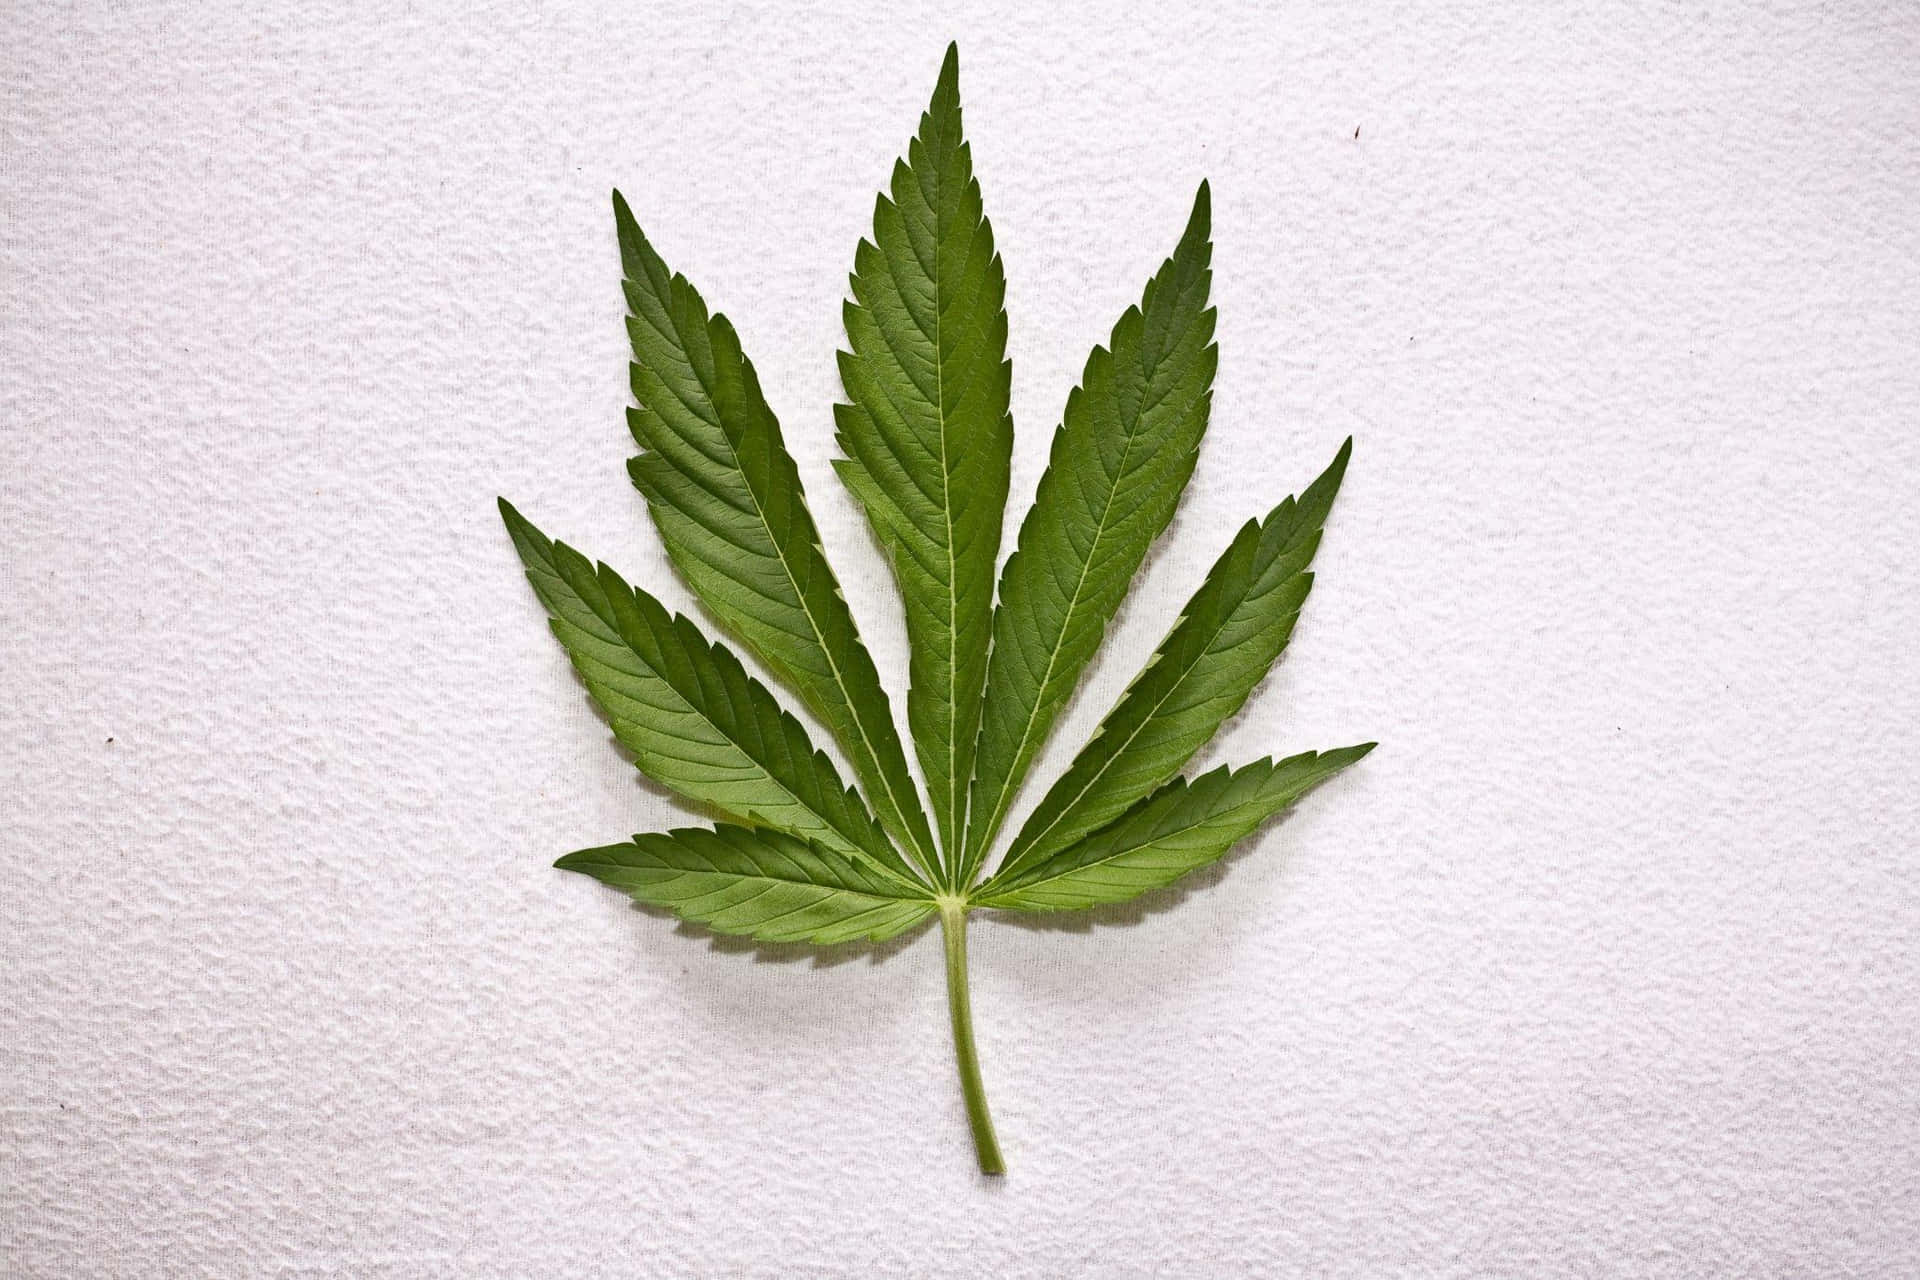 Qualitativhochwertige Cannabisprodukte Werden Überprüft.